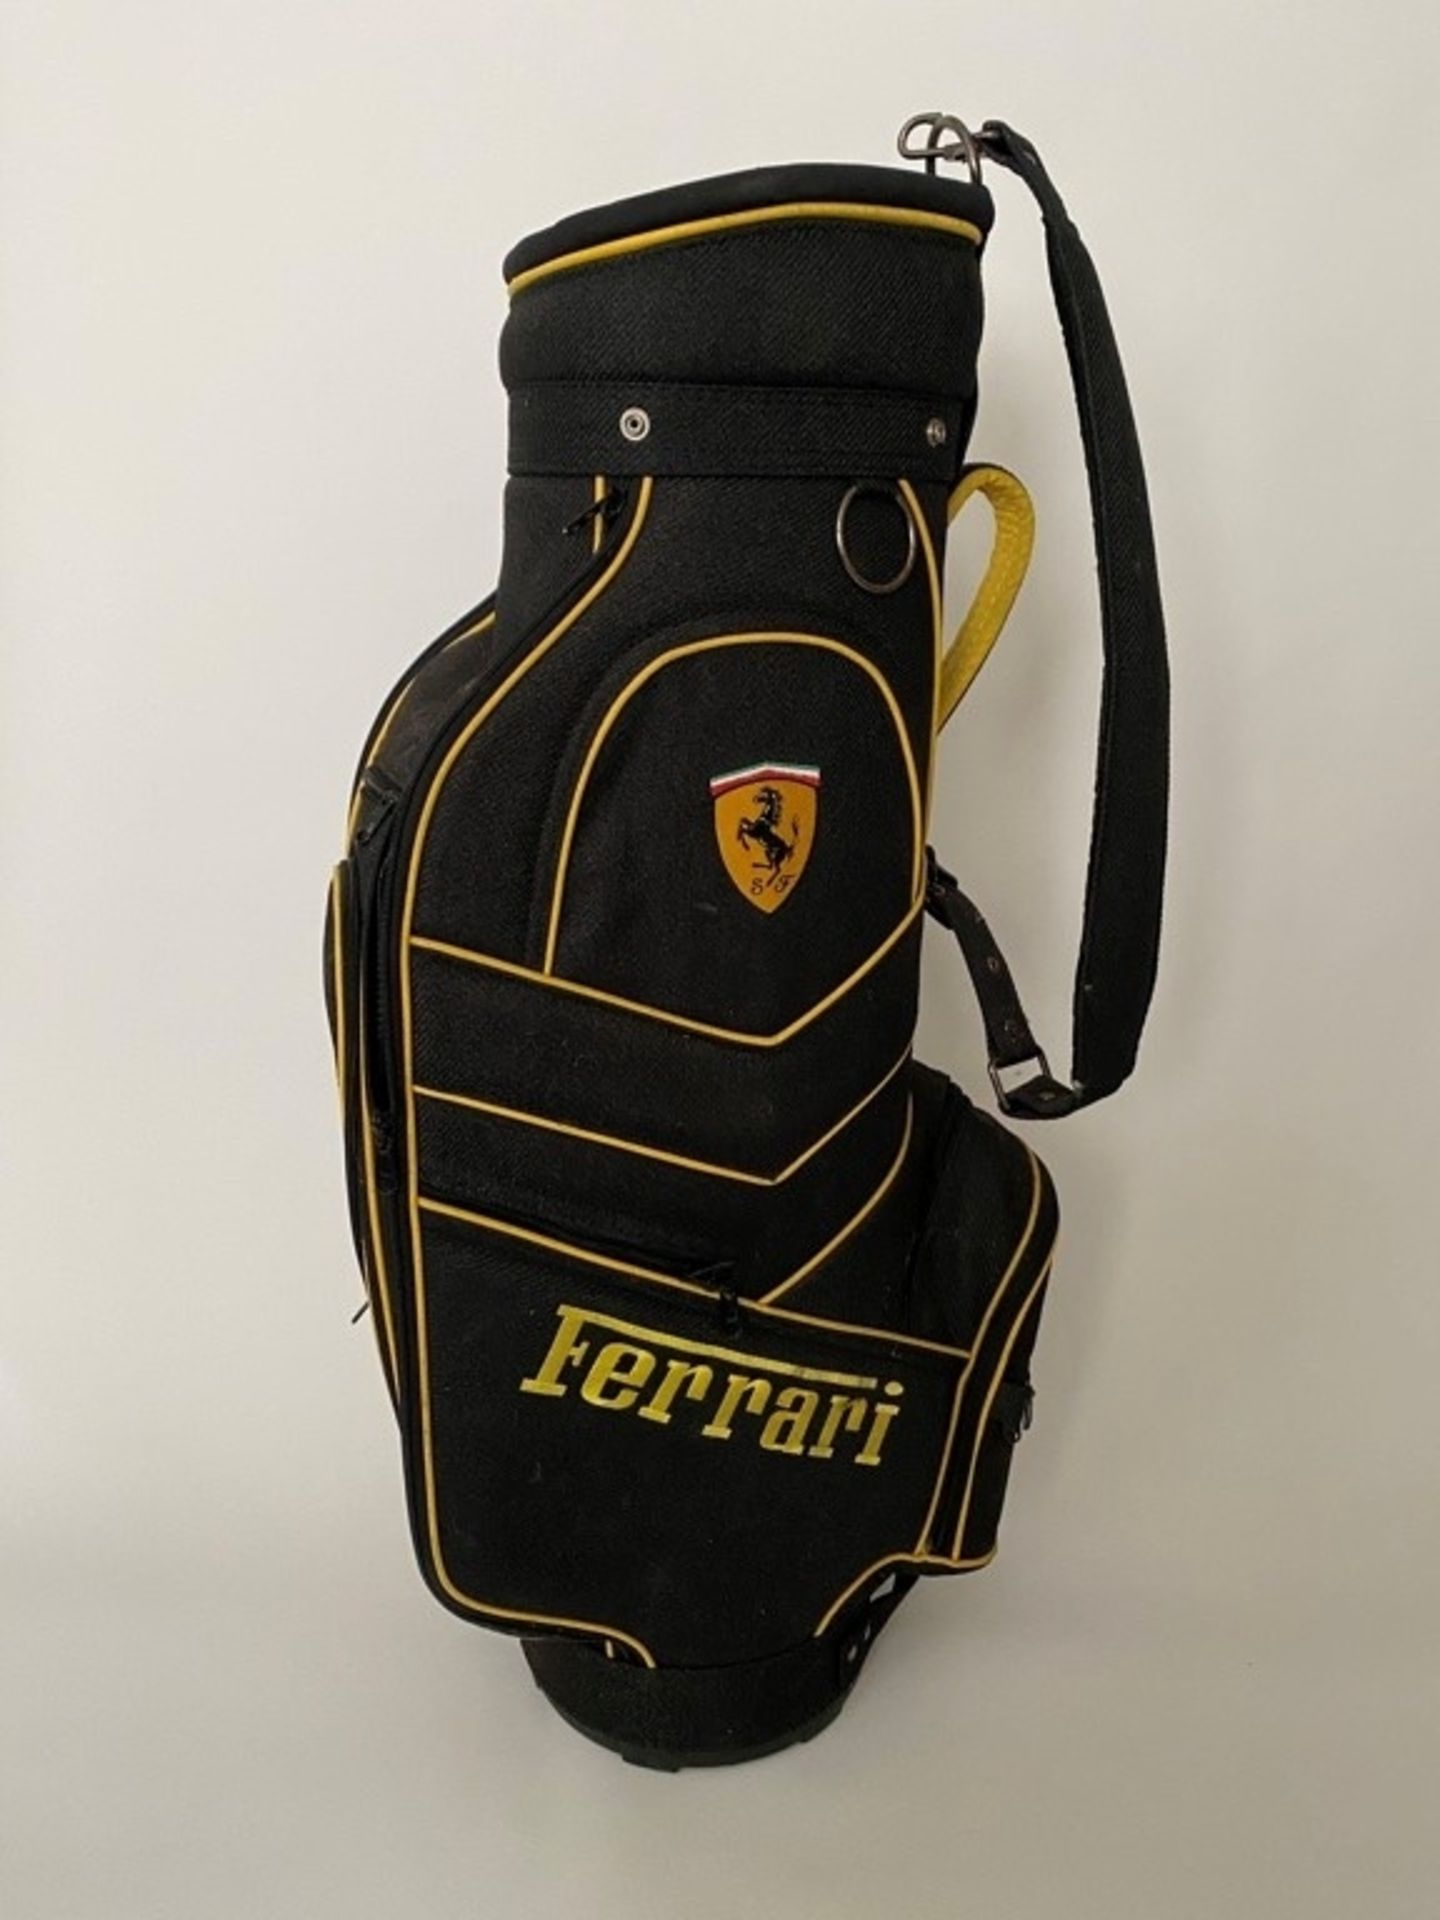 Ferrari Team Golf Cart Bag